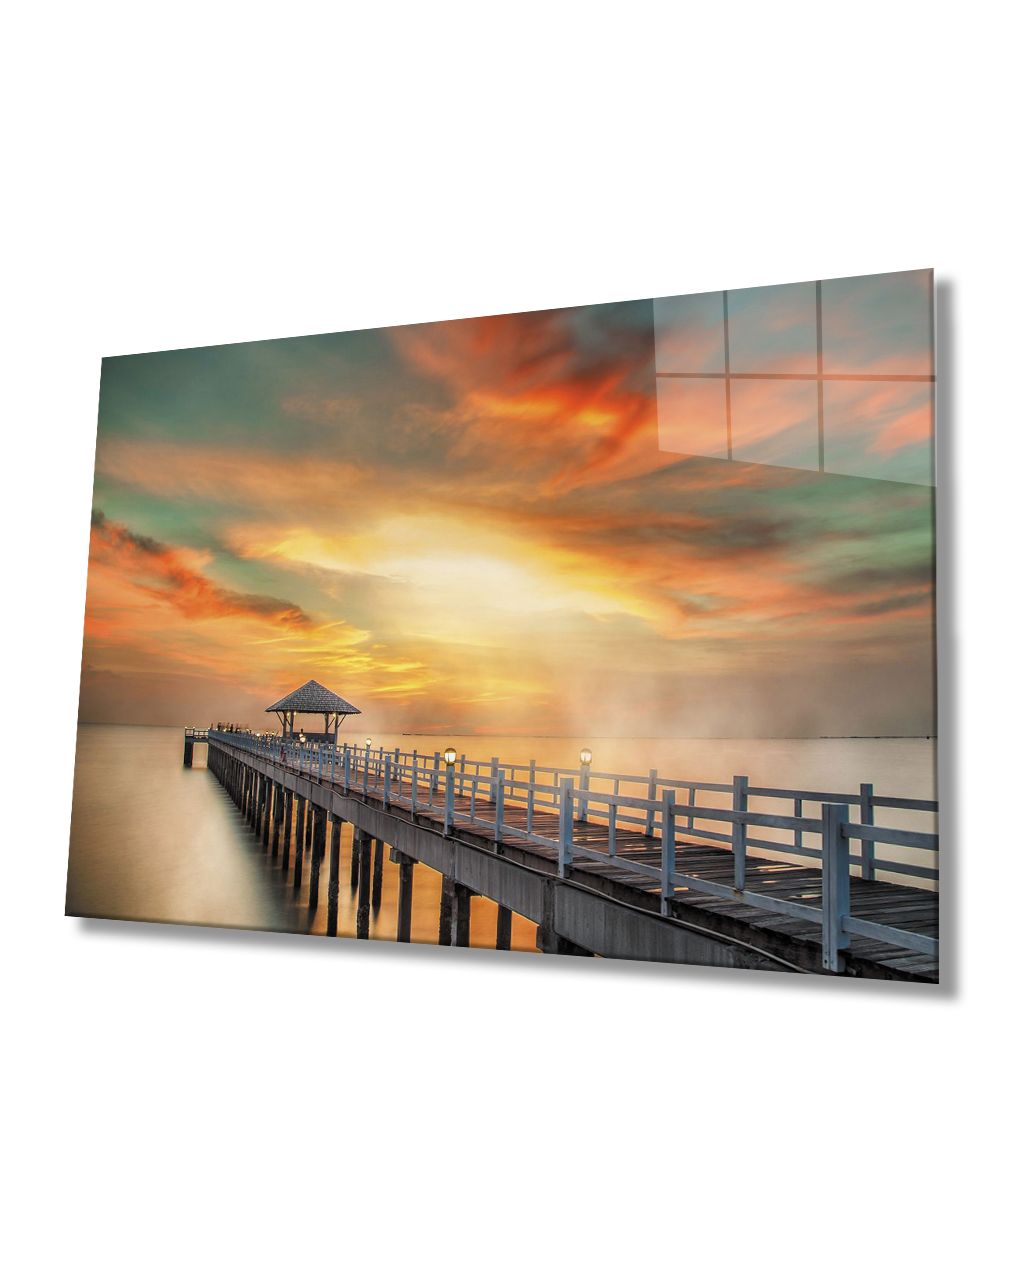 İskele Deniz Gün Batımı Cam Tablo  4mm Dayanıklı Temperli Cam Pier Sea Sunset Glass Table 4mm Durable Tempered Glass